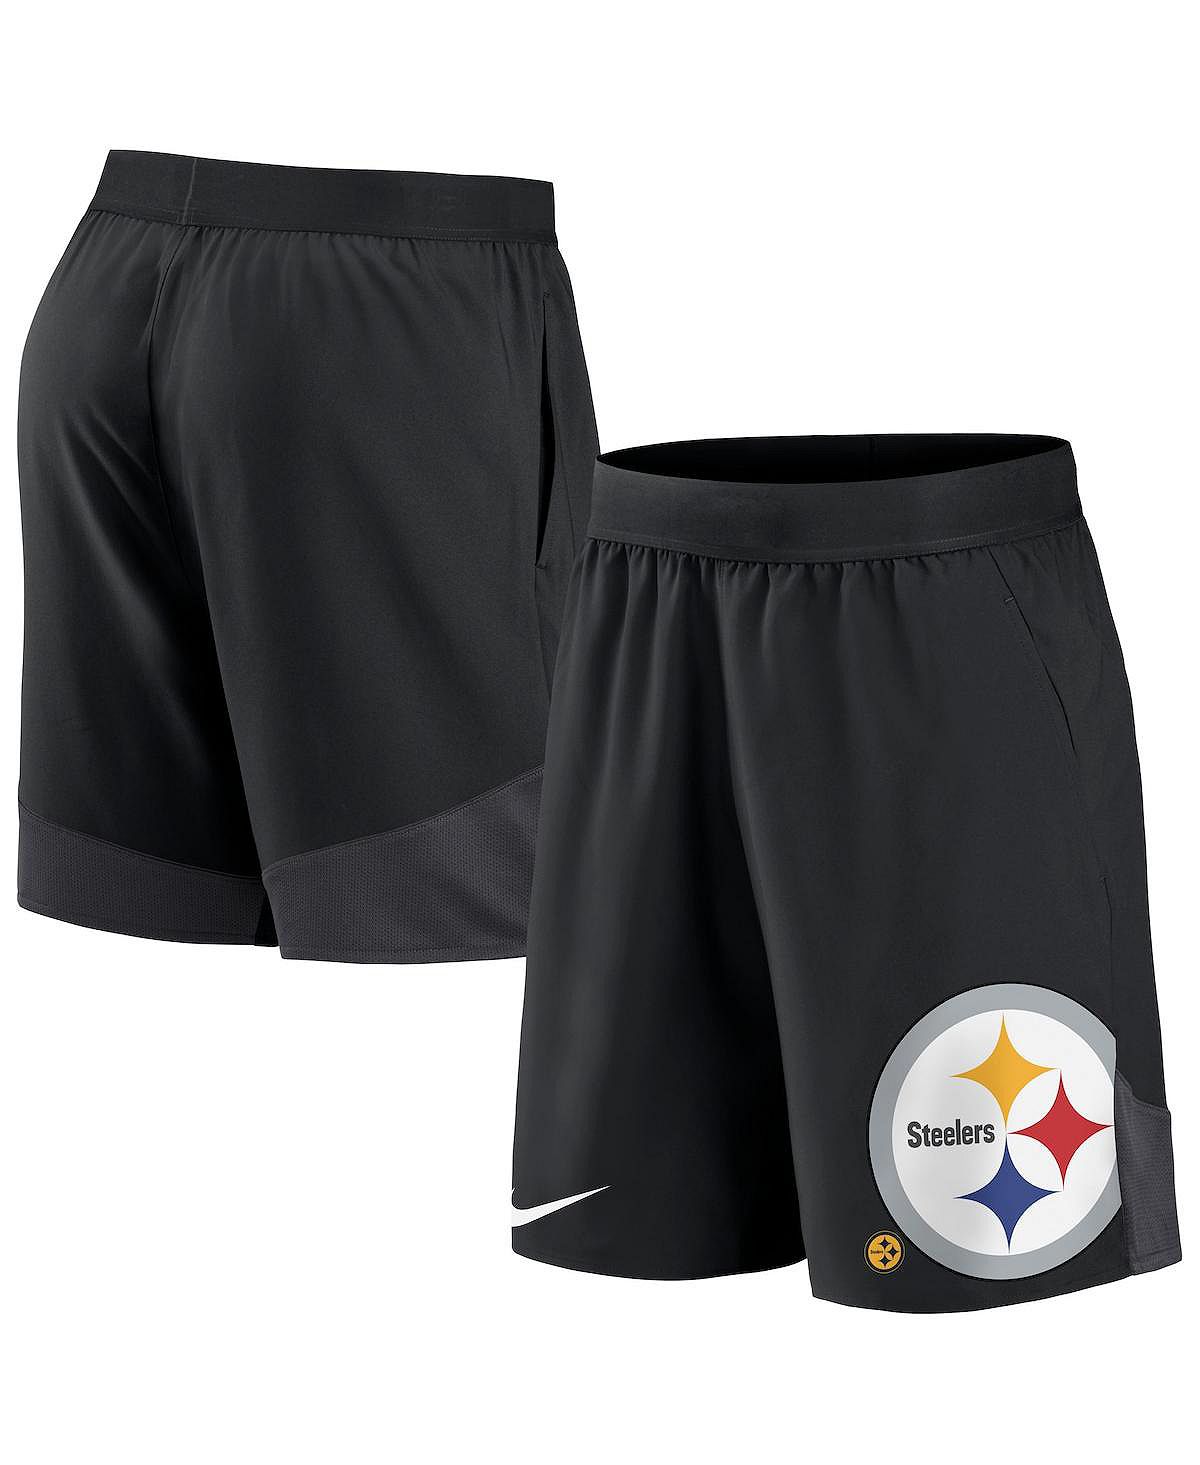 Мужские черные эластичные спортивные шорты Pittsburgh Steelers Nike фото